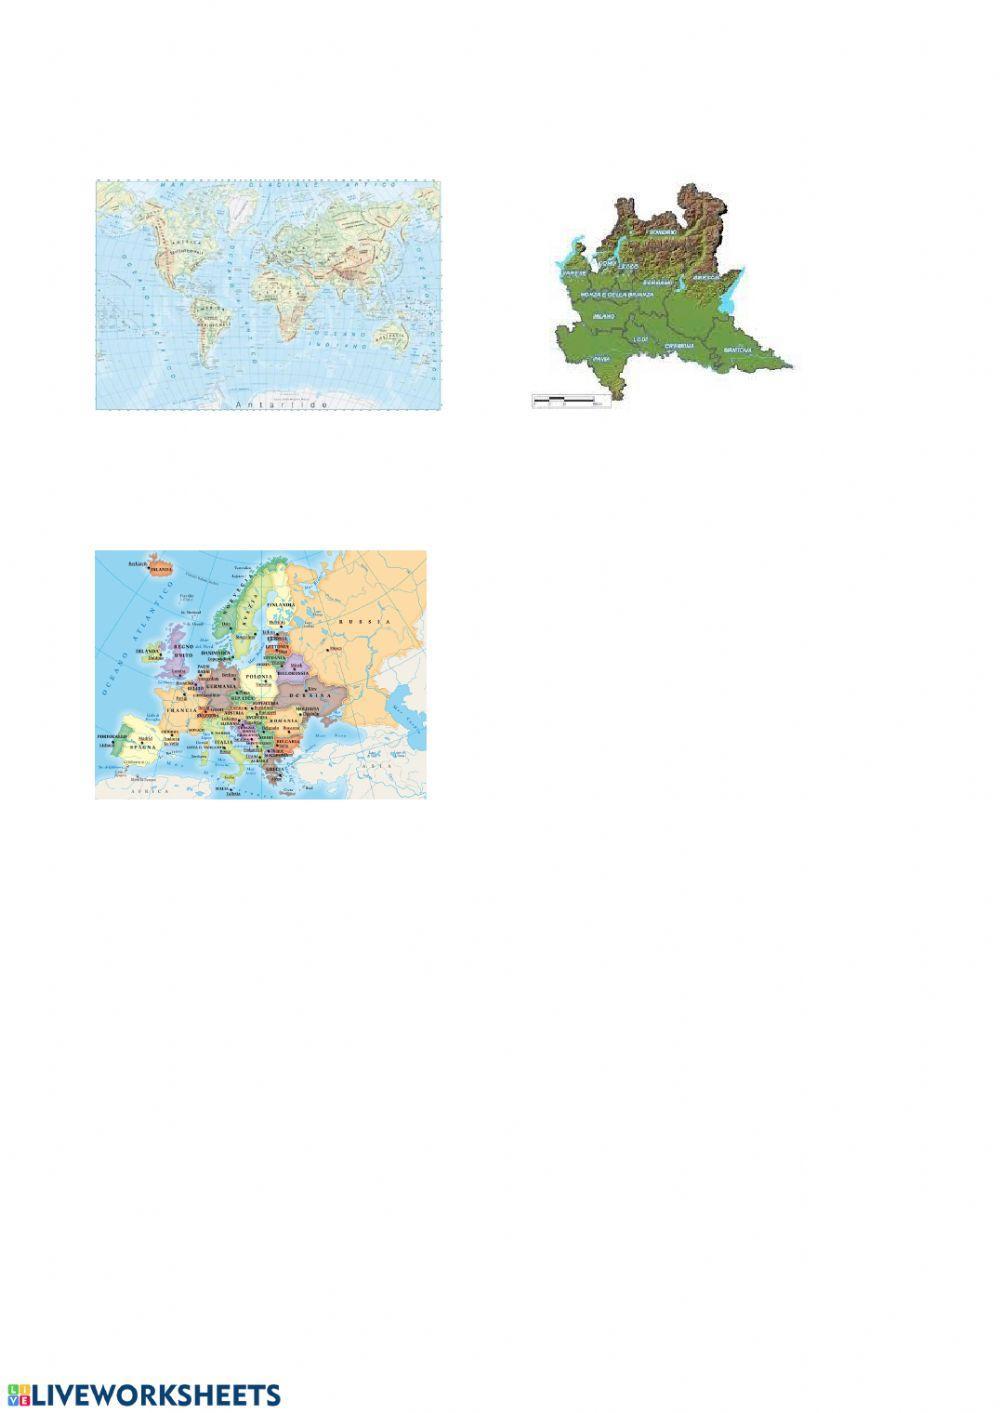 Le carte geografiche